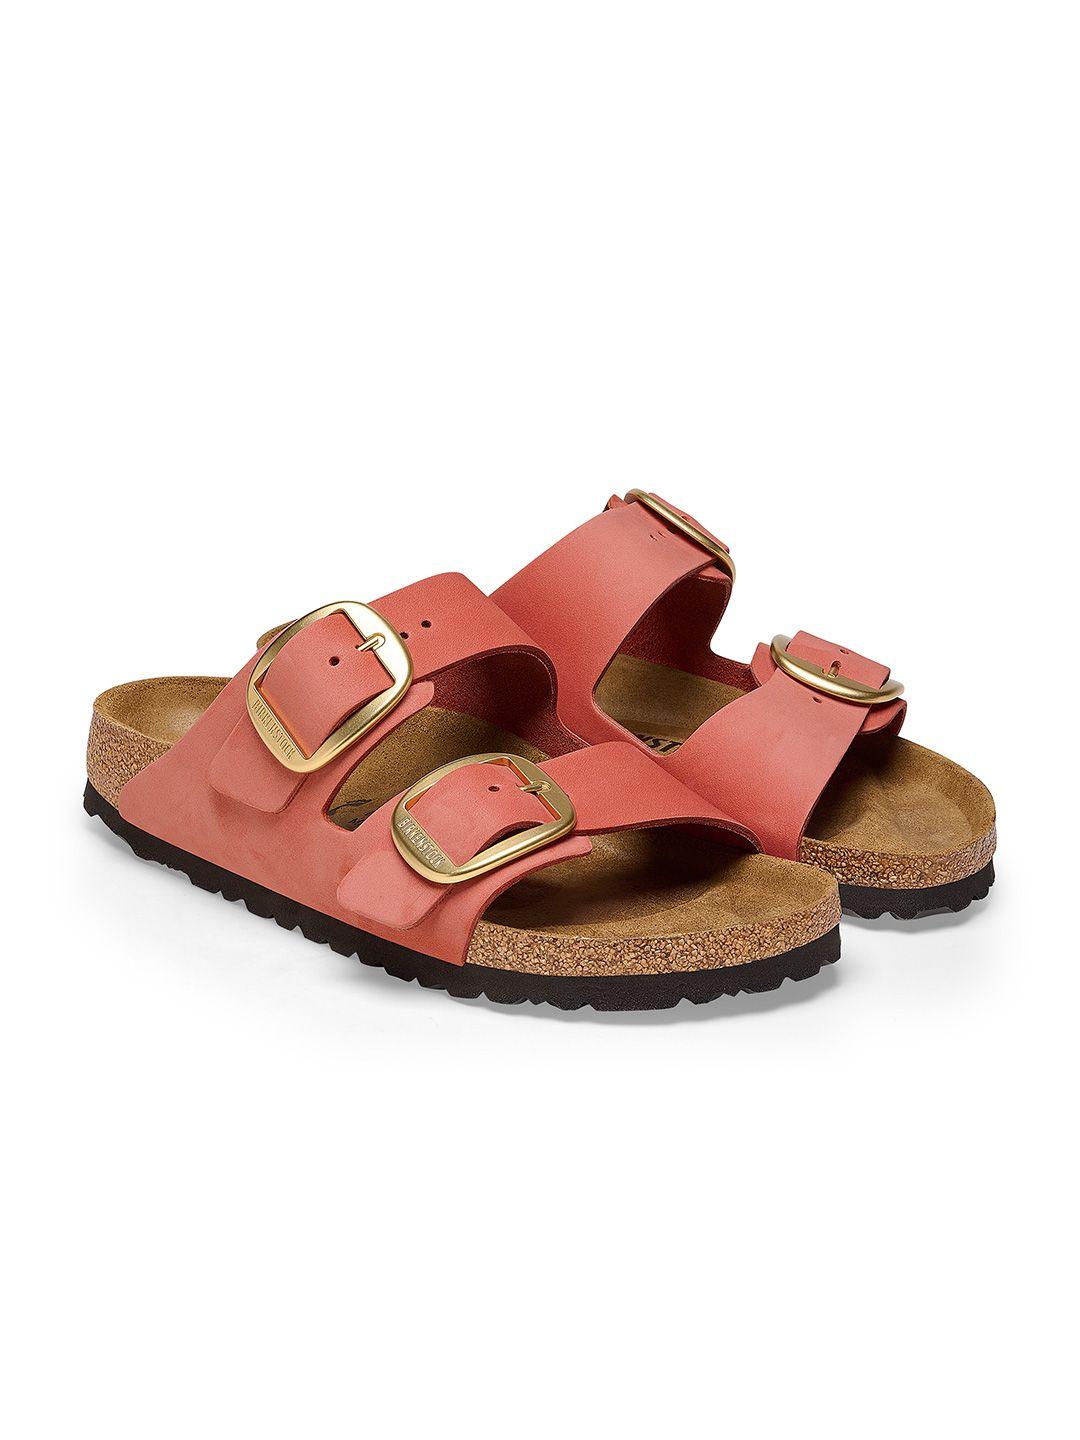 birkenstock women comfort sandals